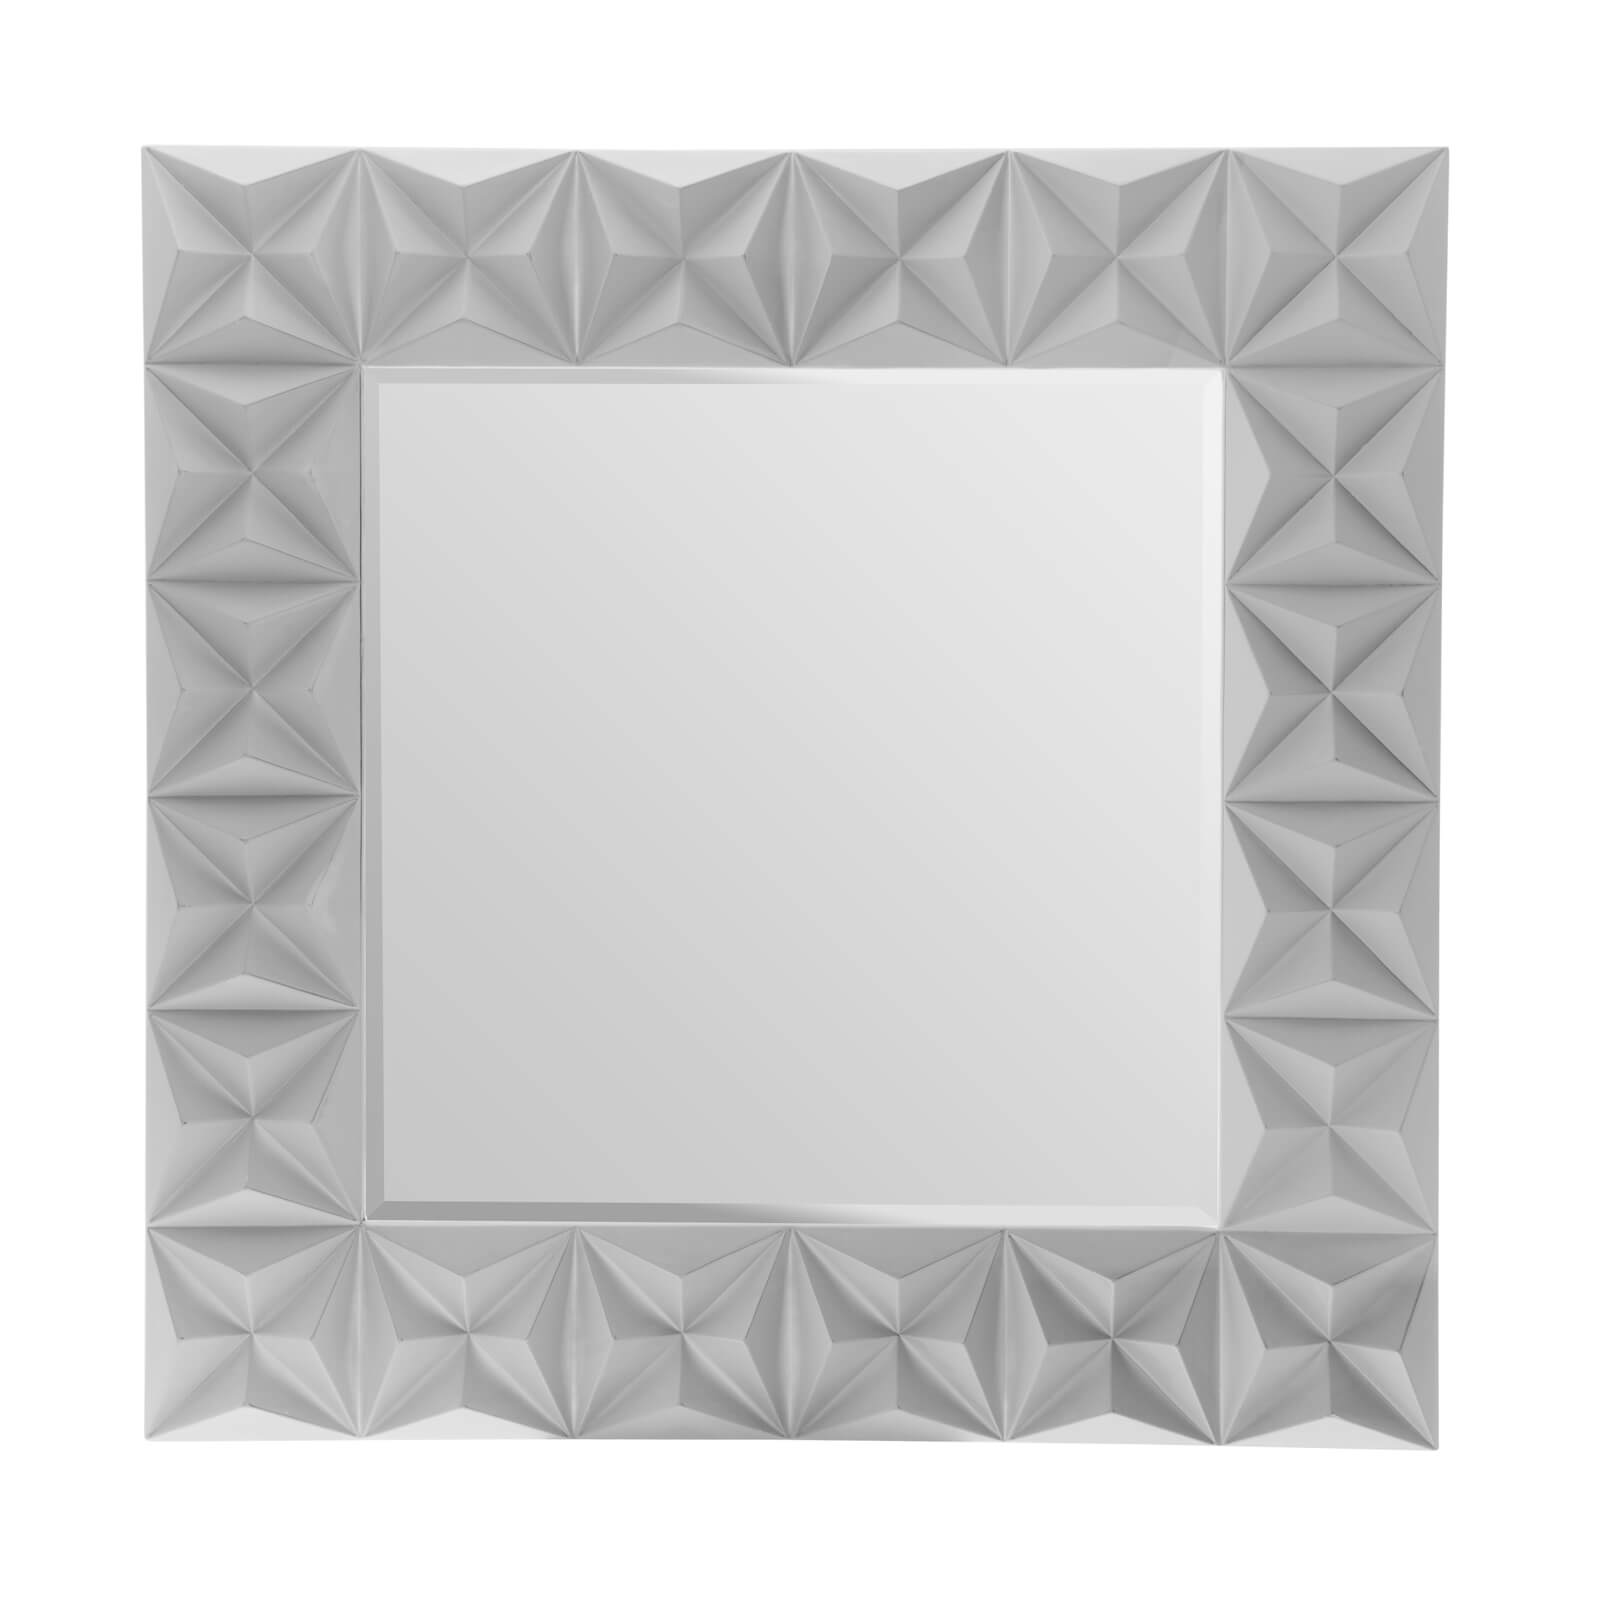 3D Effect Wall Mirror - Grey High Gloss